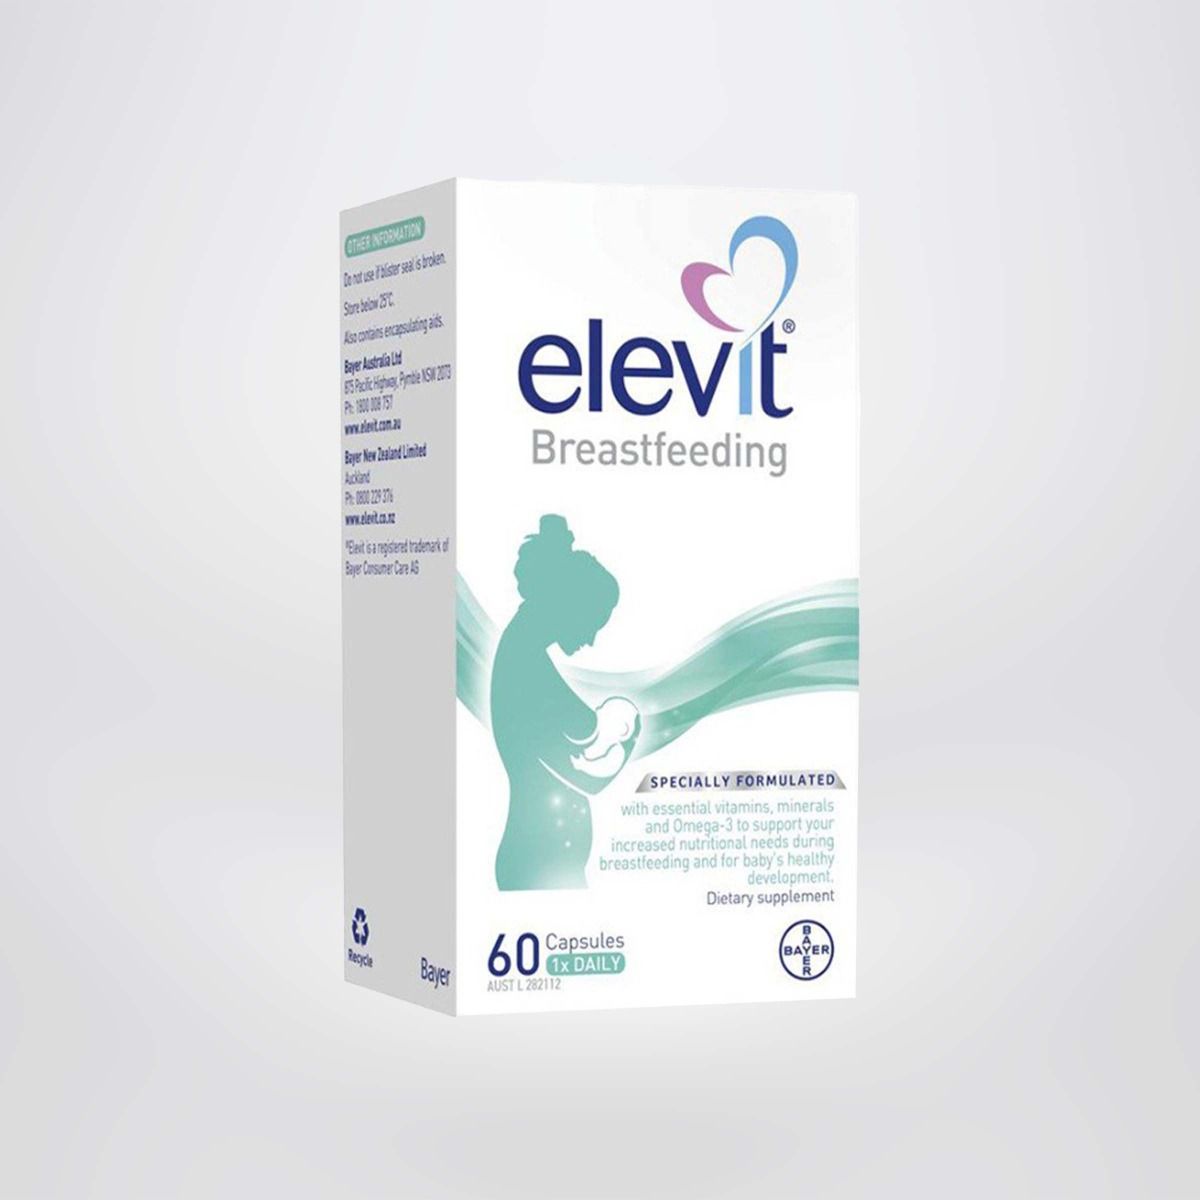 Viên uống hồi phục sức khỏe Elevit Breastfeeding cung cấp đầy đủ vitamin, dưỡng chất cho phụ nữ sau sinh